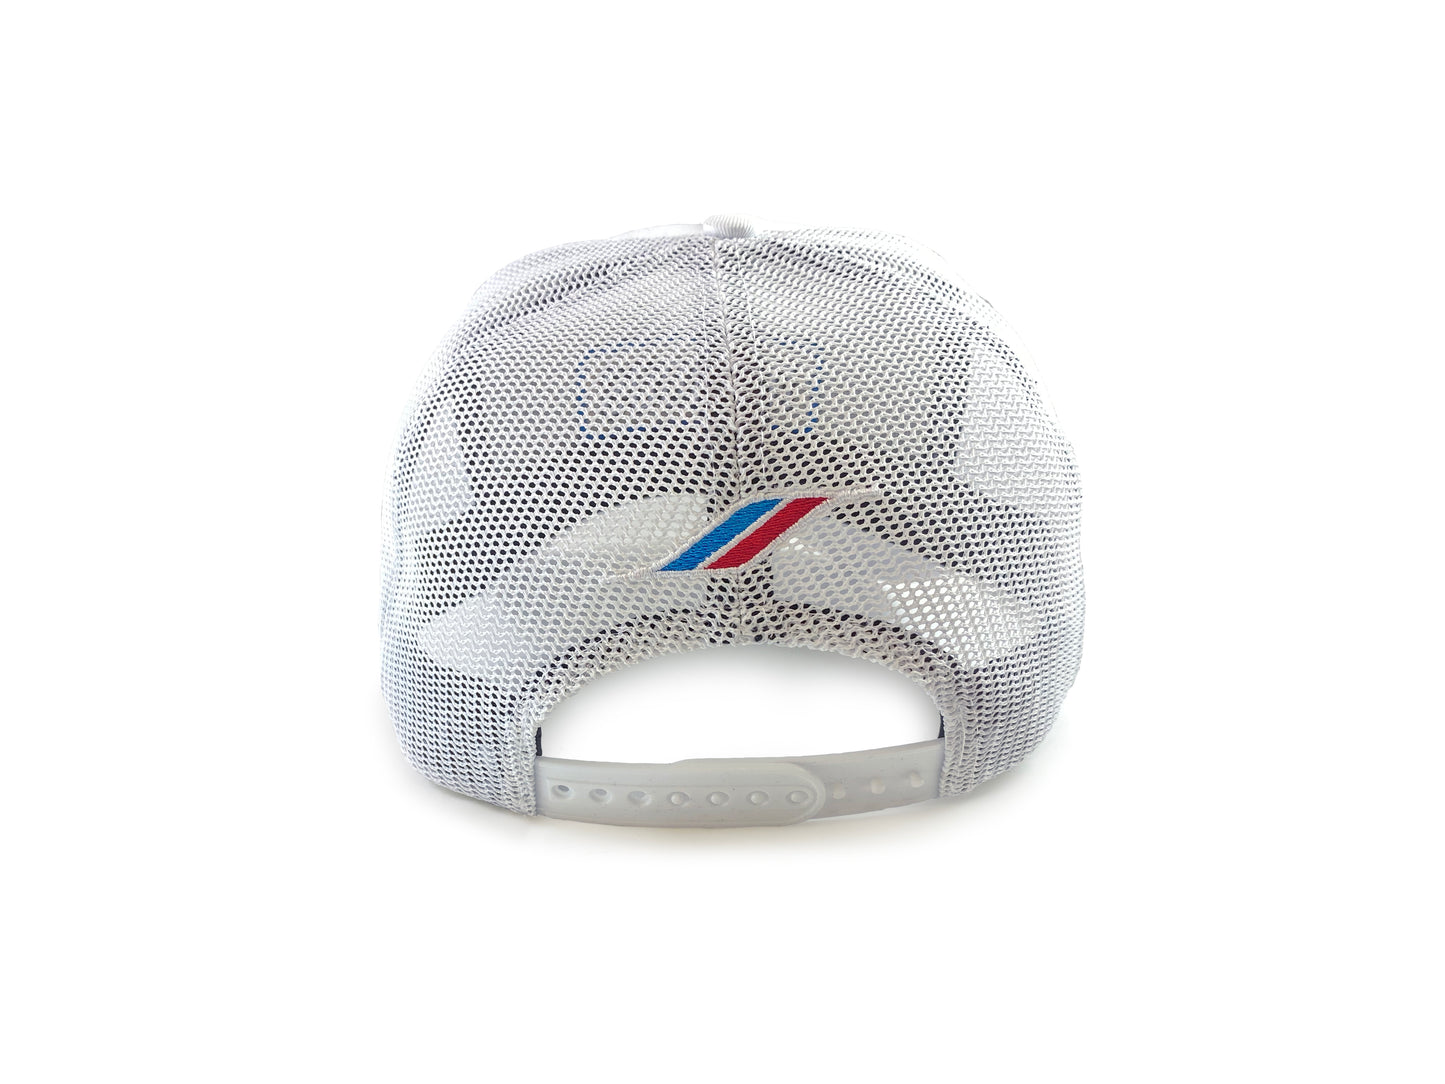 "Love N2O" Snapback Flat Bill Hat (White)